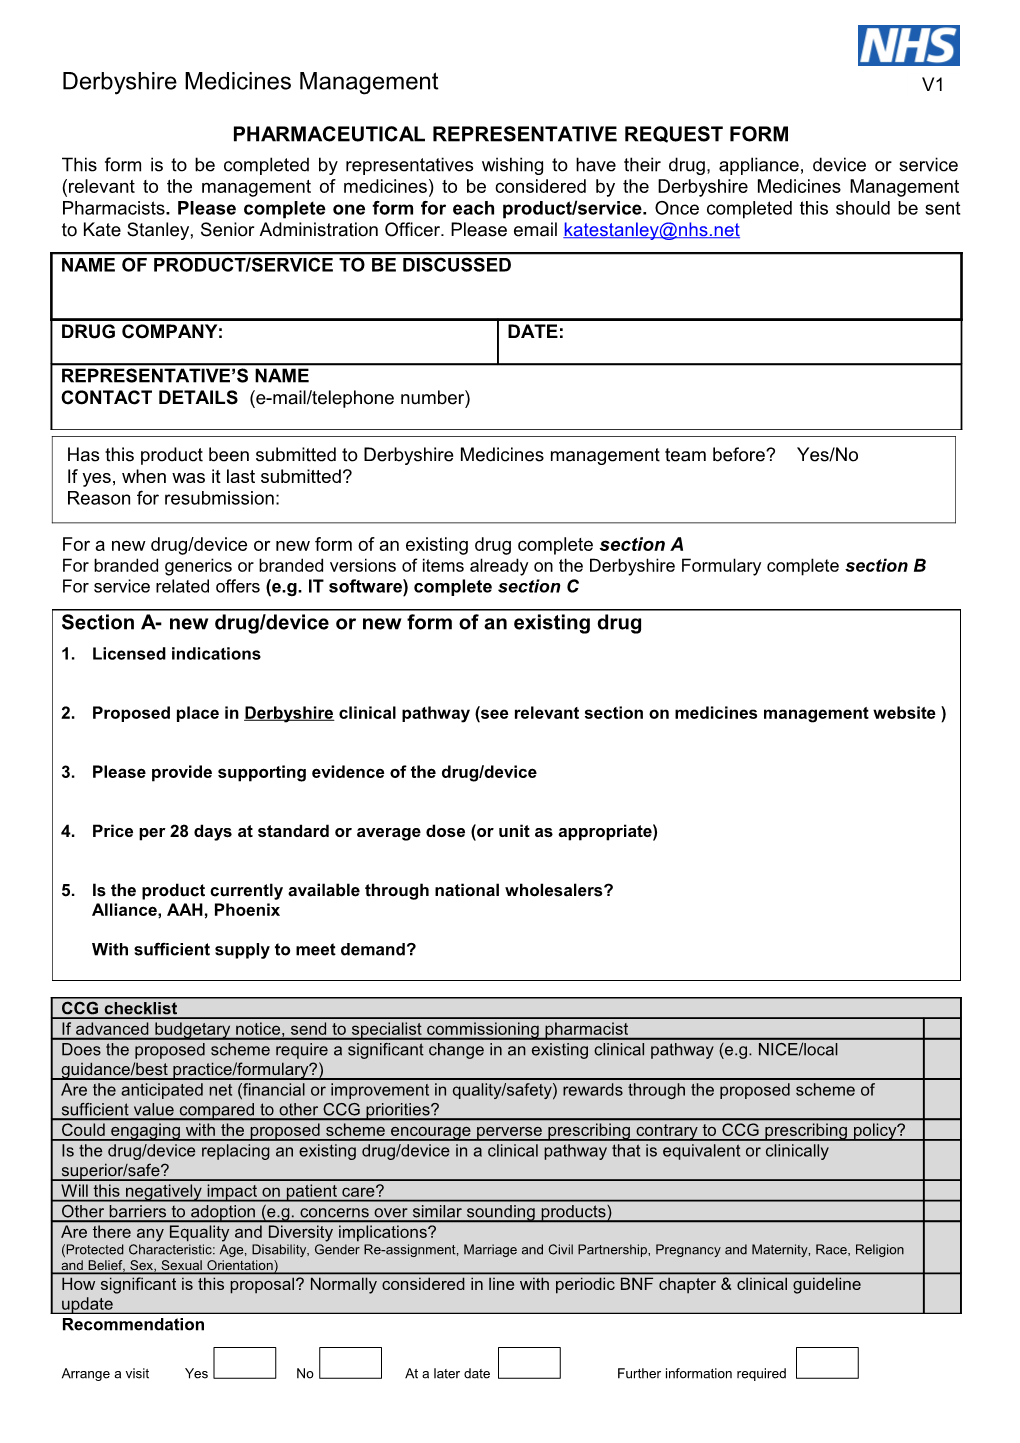 Pharmaceutical Representative Visit Request Form